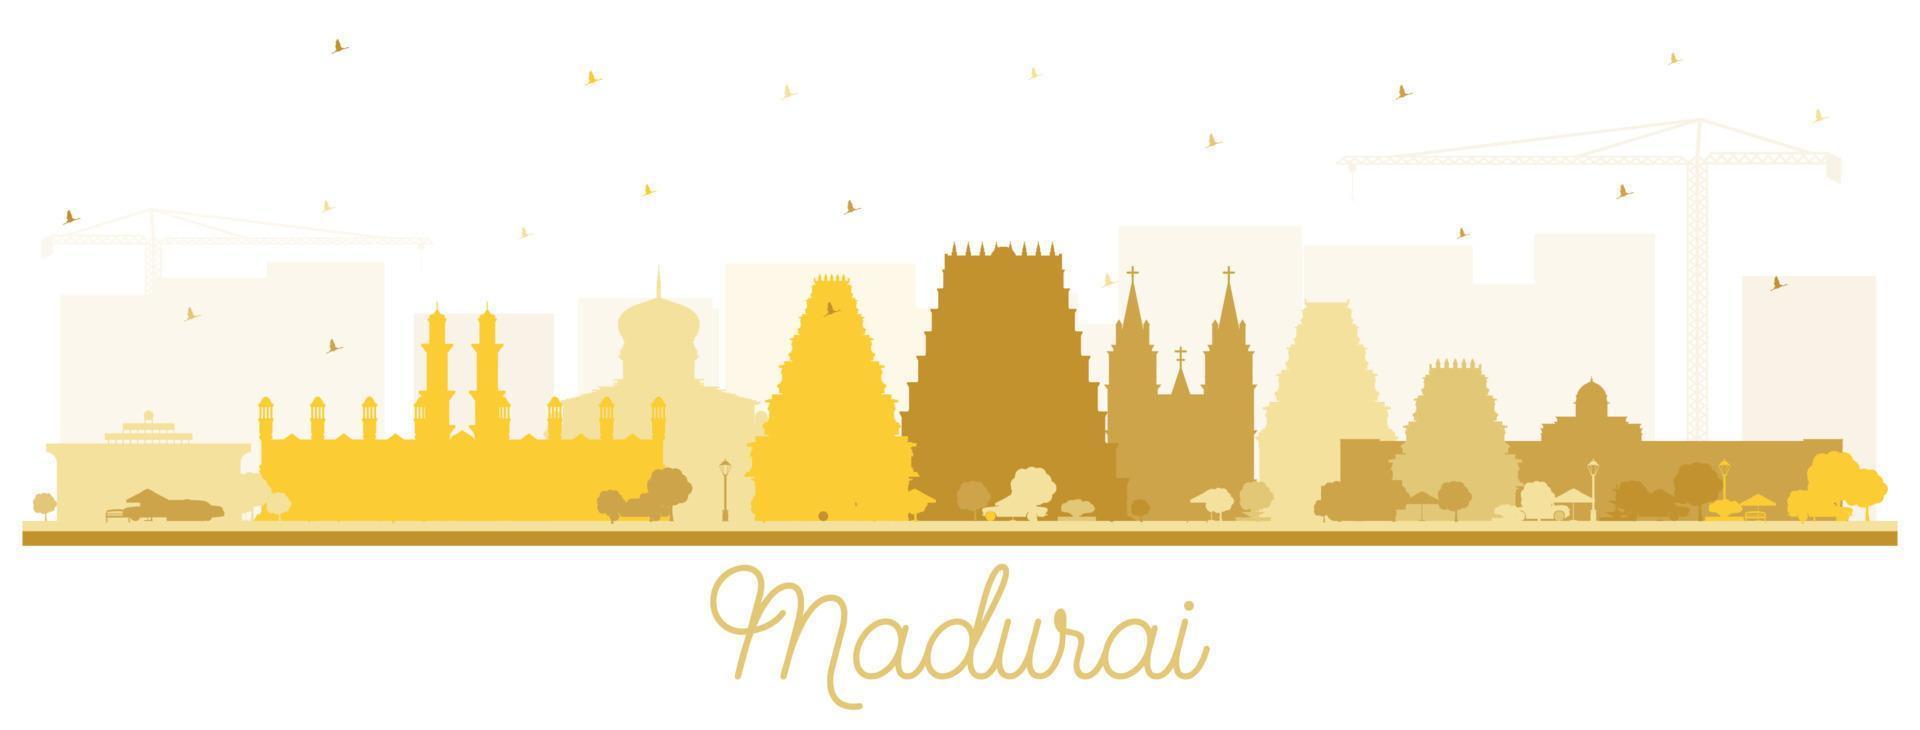 madurai India città orizzonte silhouette con d'oro edifici isolato su bianca. vettore